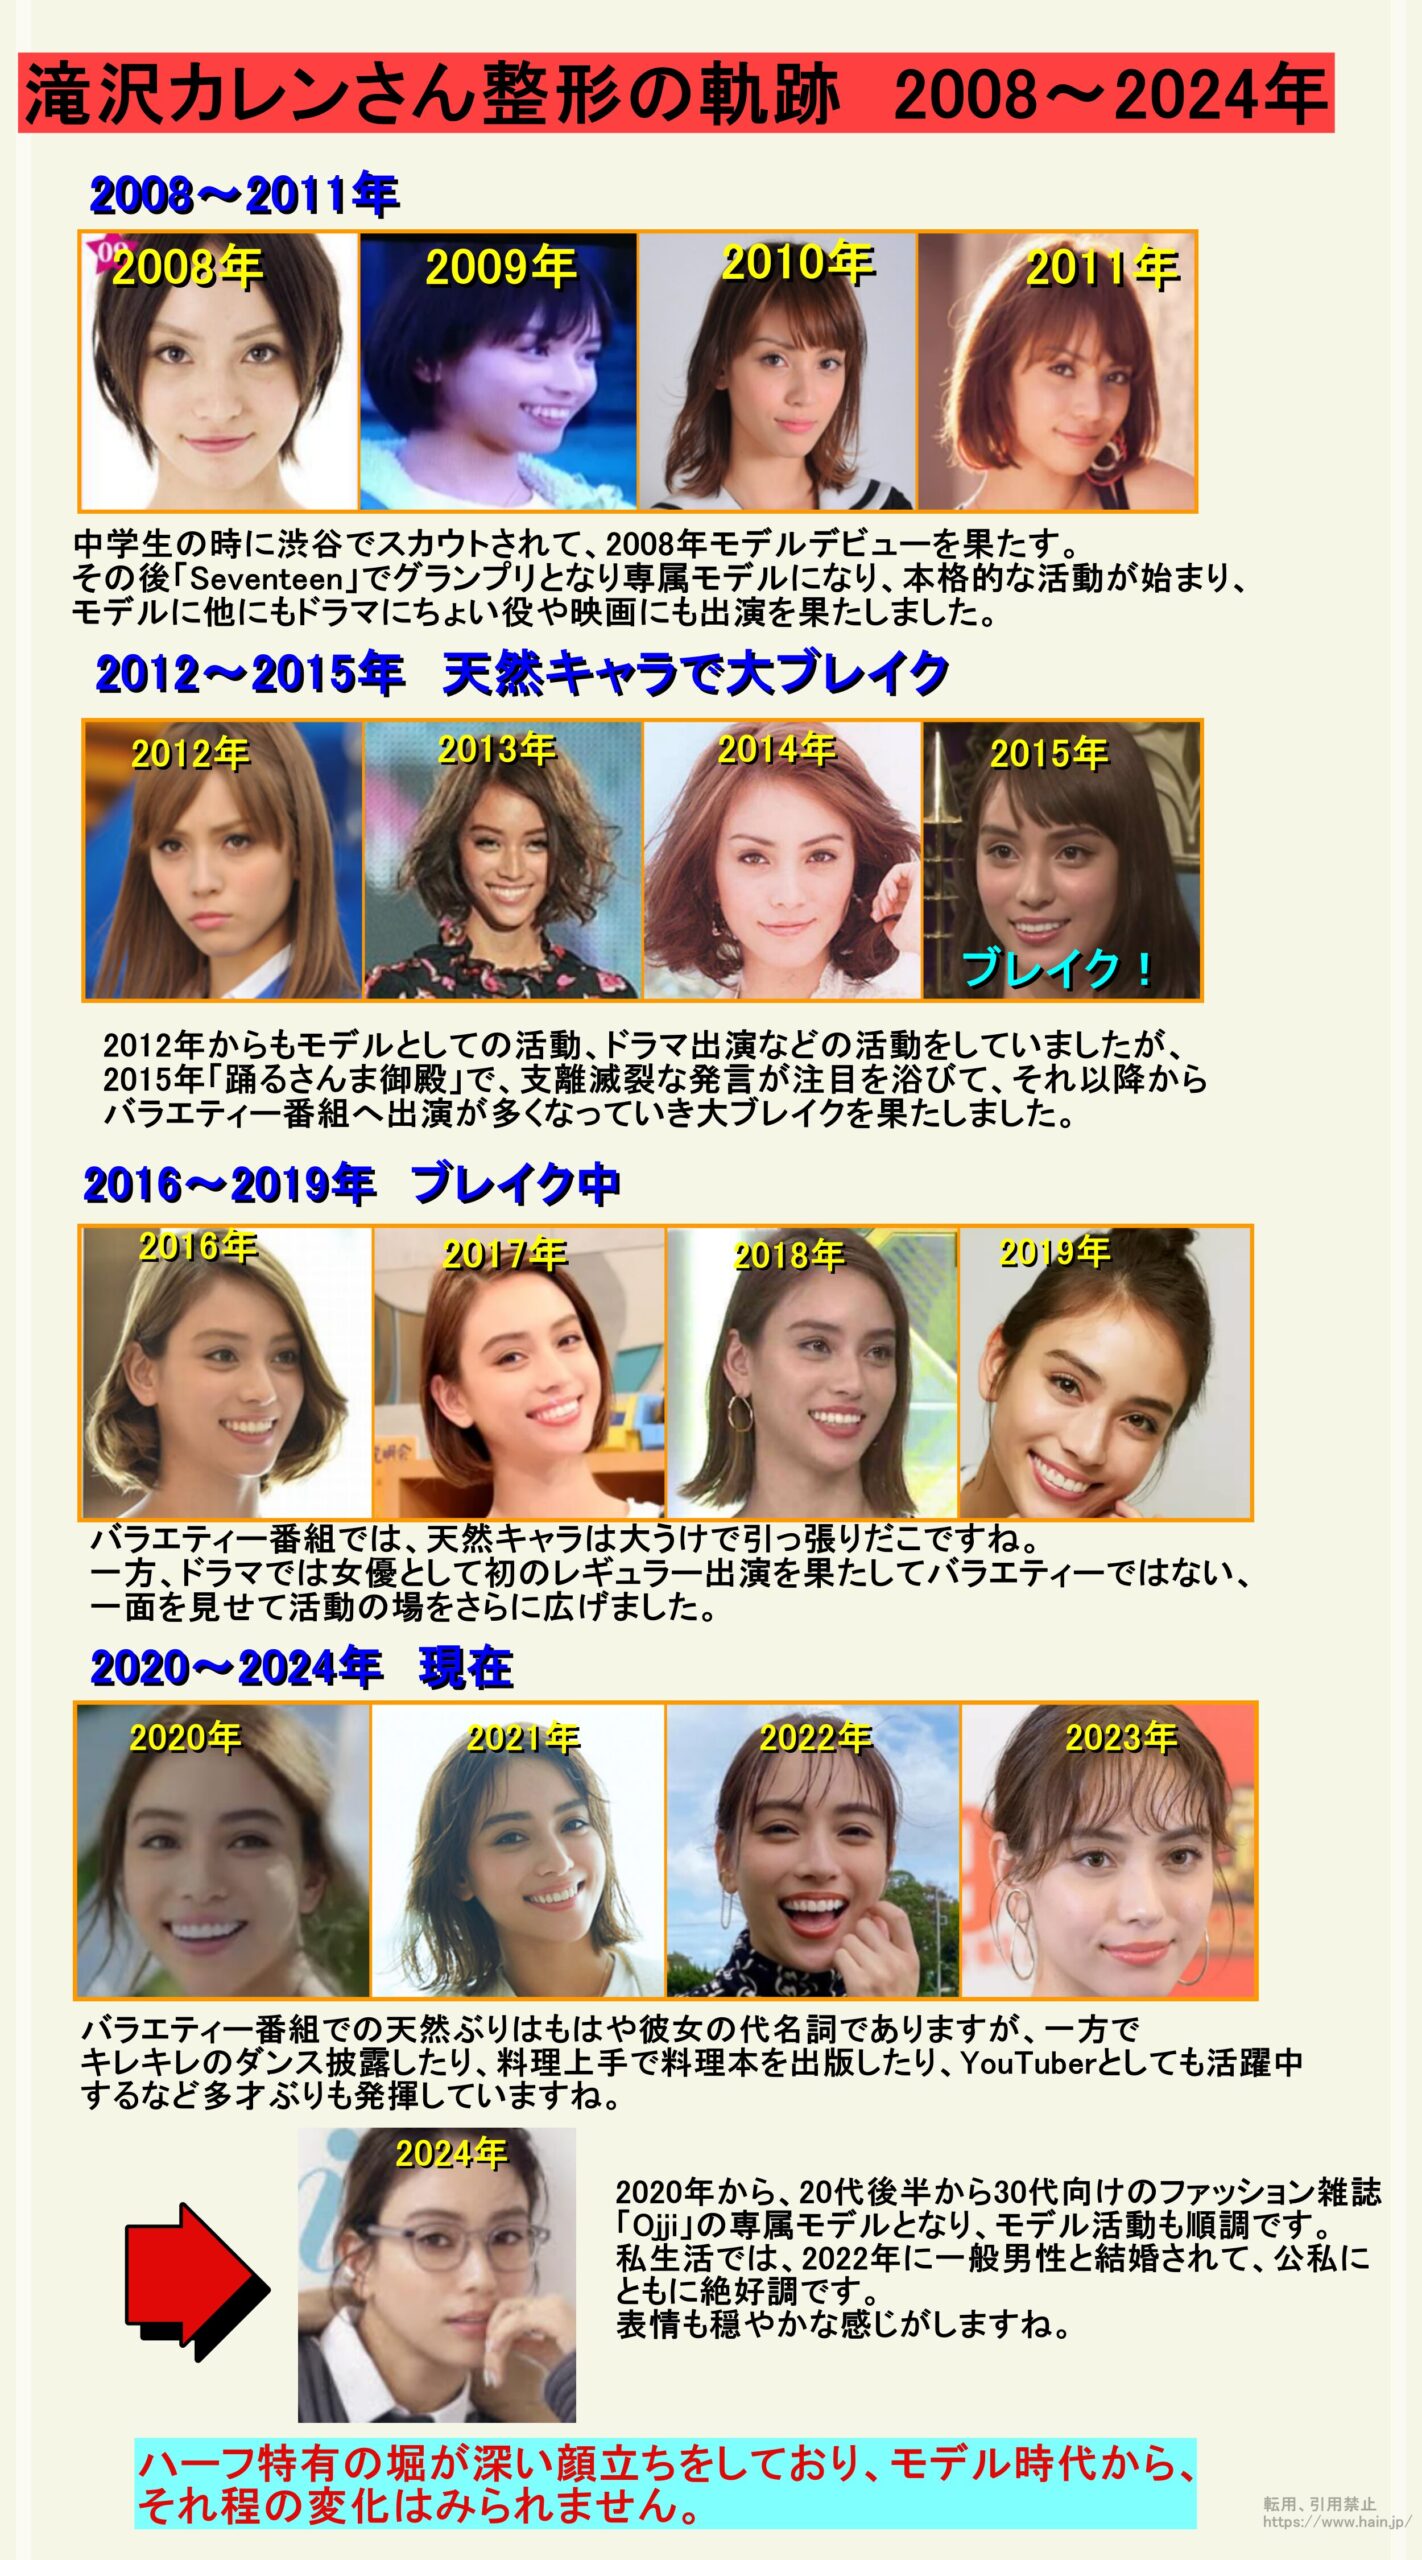 滝沢カレンさん整形の軌跡　2008～2024年
2008～2011年の変化
中学生の時に渋谷でスカウトされて、2008年モデルデビューを果たす。
その後「Seventeen」でグランプリとなり専属モデルになり、本格的な活動が始まり、
モデルに他にもドラマにちょい役や映画にも出演を果たしました。
2012～2015年の変化
天然キャラでブレイク
2012年からもモデルとしての活動、ドラマ出演などの活動をしていましたが、
2015年「踊るさんま御殿」で、支離滅裂な発言が注目を浴びて、それ以降から
バラエティー番組へ出演が多くなっていき大ブレイクを果たしました。
2016～2019年の変化　ブレイク中
バラエティー番組では、天然キャラは大うけで引っ張りだこですね。
一方、ドラマでは女優として初のレギュラー出演を果たしてバラエティーではない、
一面を見せて活動の場をさらに広げました。
2020～2023年の変化
バラエティー番組での天然ぶりはもはや彼女の代名詞でありますが、一方で
キレキレのダンス披露したり、料理上手で料理本を出版したり、YouTuberとしても活躍中
するなど多才ぶりも発揮していますね。
2024年現在
2020年から、20代後半から30代向けのファッション雑誌
「Ojji」の専属モデルとなり、モデル活動も順調です。
私生活では、2022年に一般男性と結婚されて、公私に
ともに絶好調です。
表情も穏やかな感じがしますね。
結論
ハーフ特有の堀が深い顔立ちをしており、モデル時代から、
それ程の変化はみられません。
